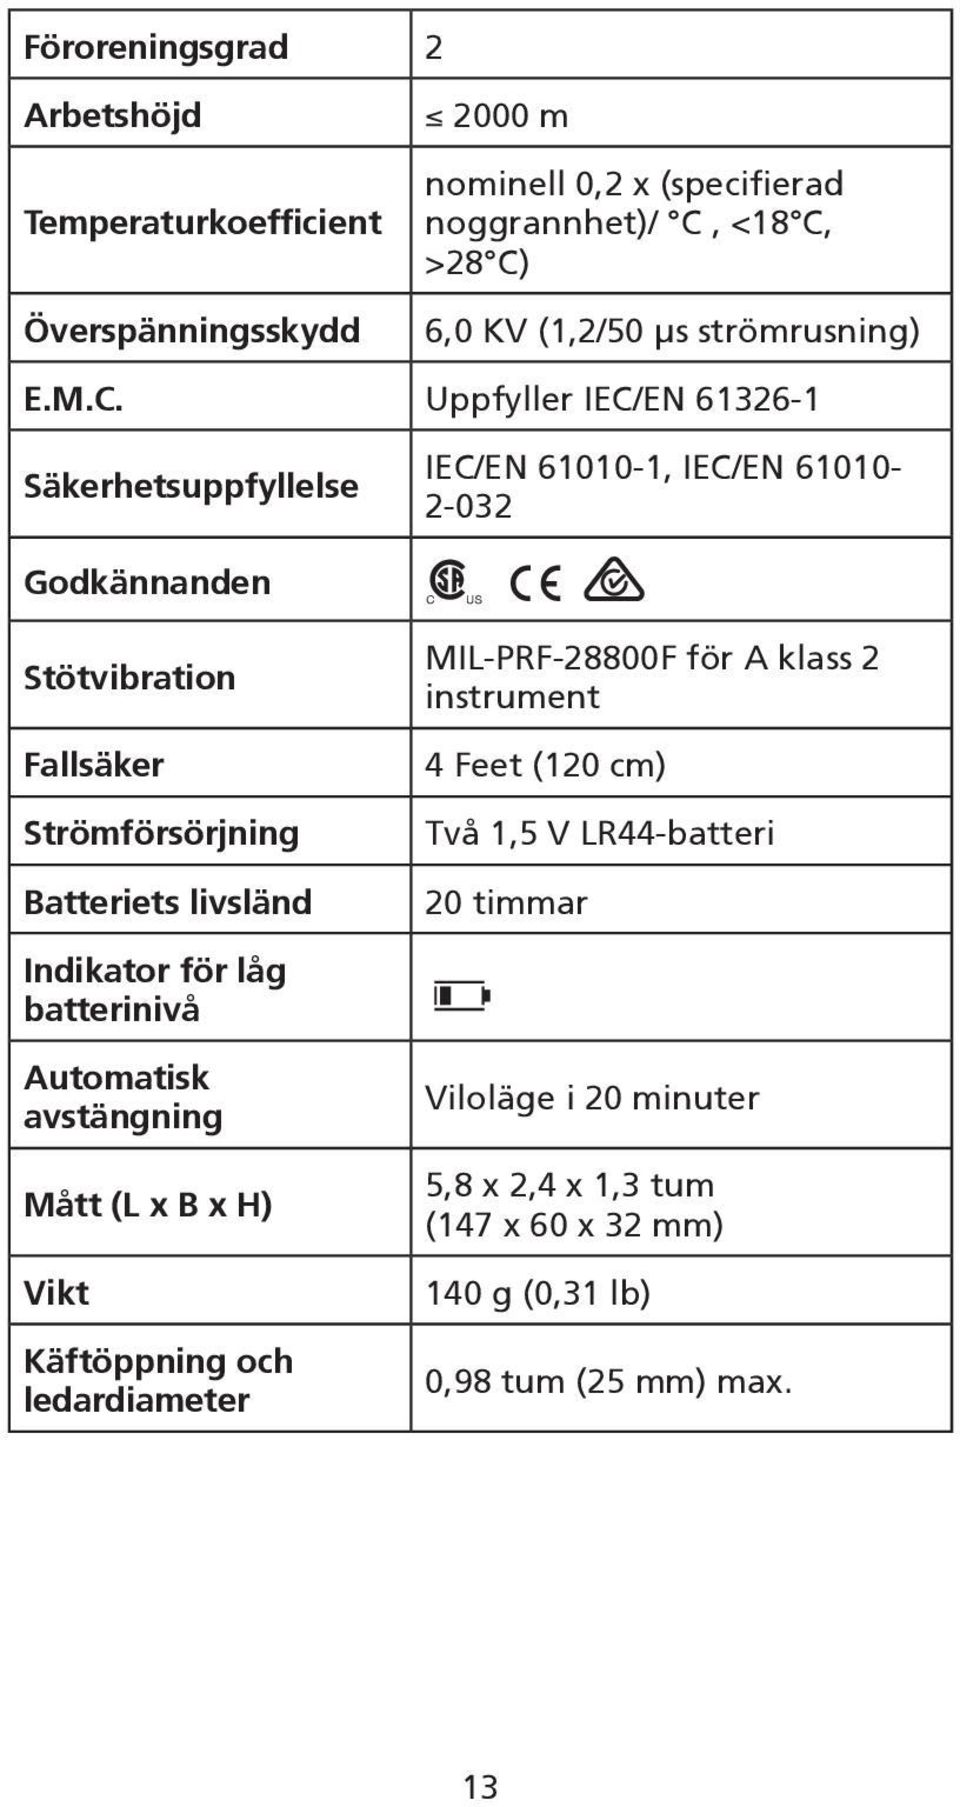 Uppfyller IEC/EN 61326-1 Säkerhetsuppfyllelse IEC/EN 61010-1, IEC/EN 61010-2-032 Godkännanden Stötvibration Fallsäker Strömförsörjning Batteriets livsländ